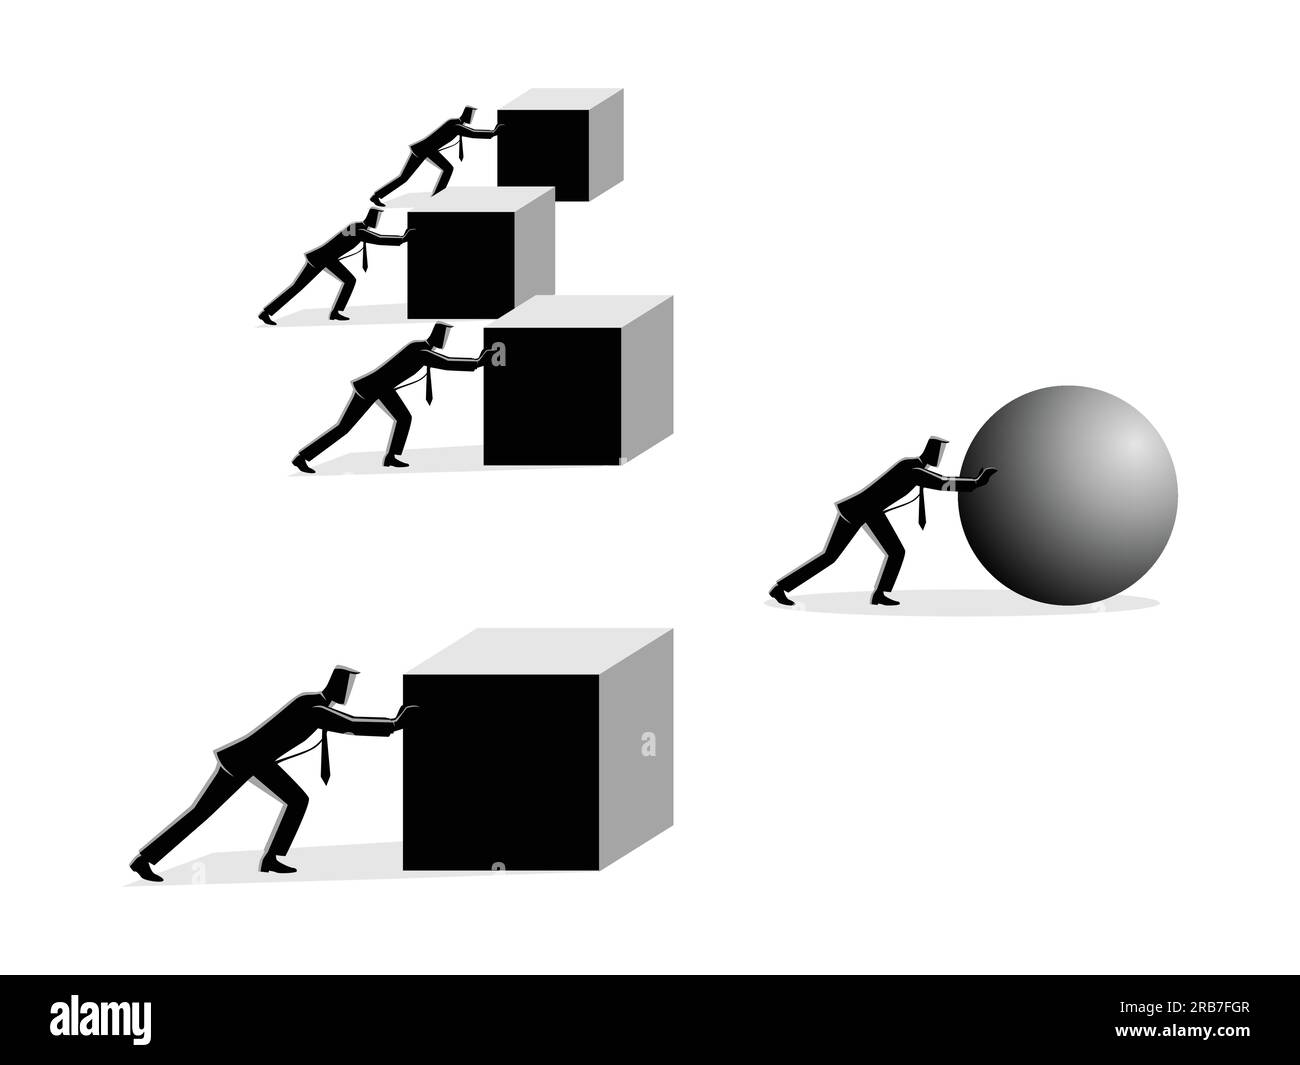 Business Concept vettore illustrazione di un uomo d'affari che spinge una sfera che conduce la corsa contro un gruppo di uomini d'affari più lenti che spingono scatole. Vincere s Illustrazione Vettoriale